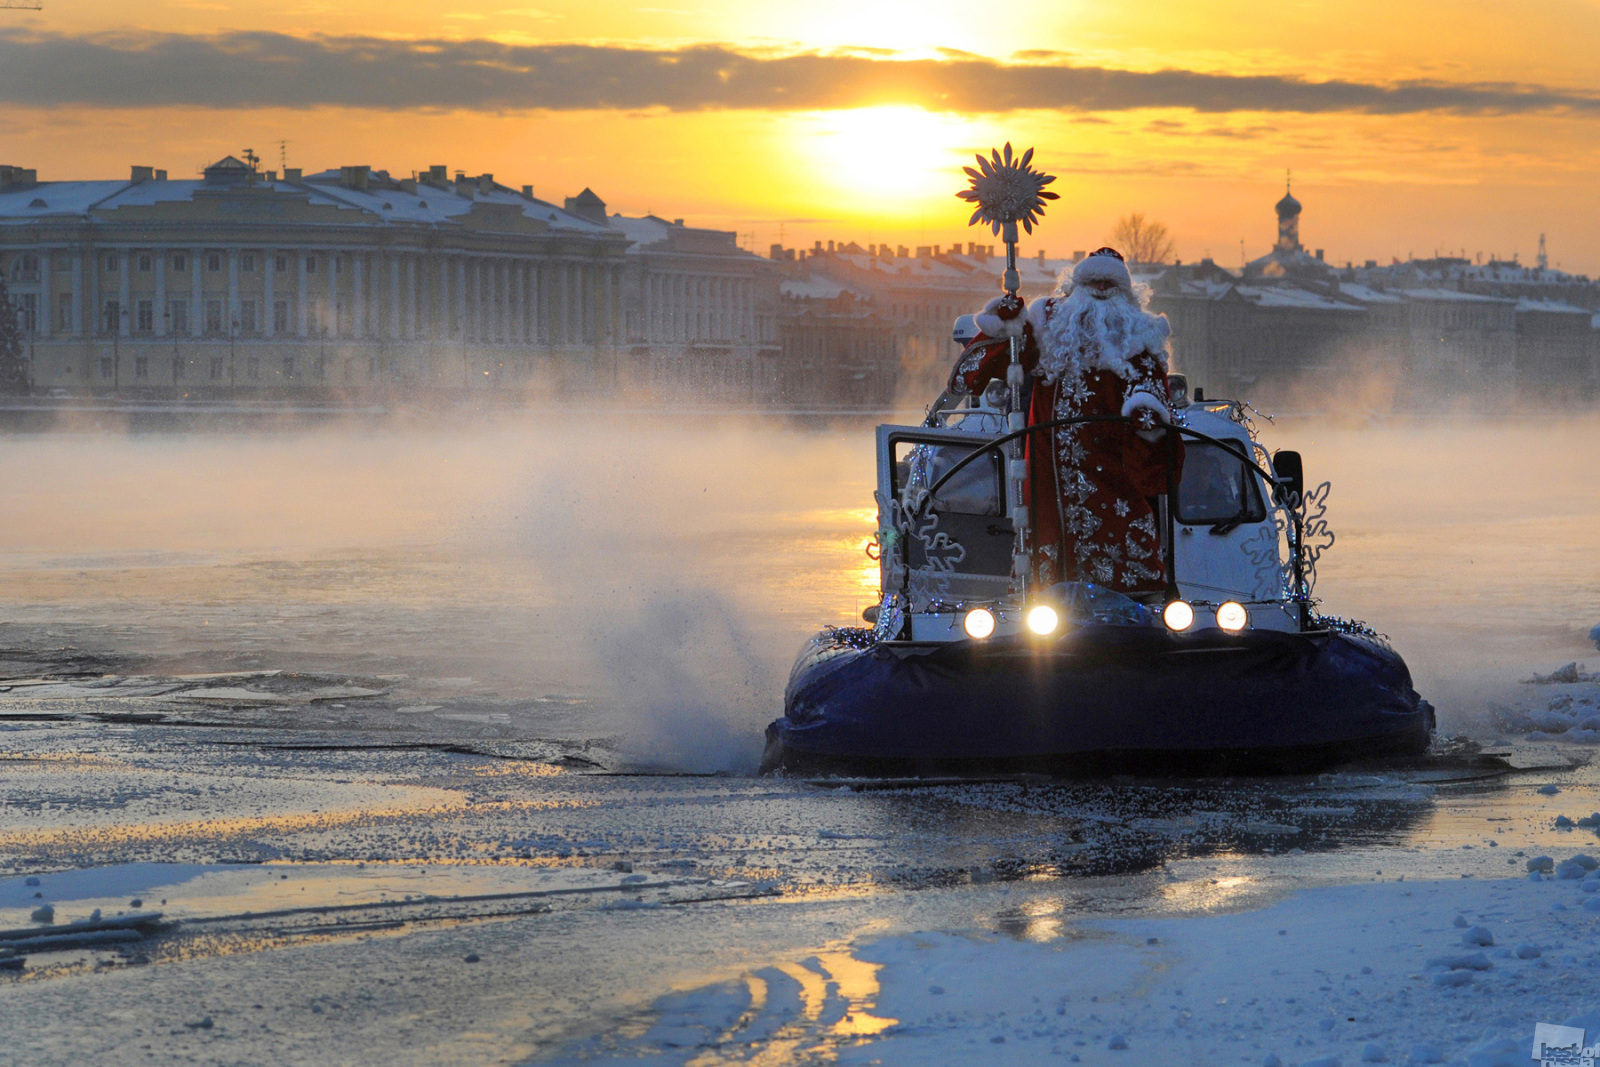 大晦日、雪に覆われたネヴァ川を超えてサンクトペテルブルクにやってくるヴェリーキー・ウスチュグのマロースじいさん（ロシア版サンタクロース）。